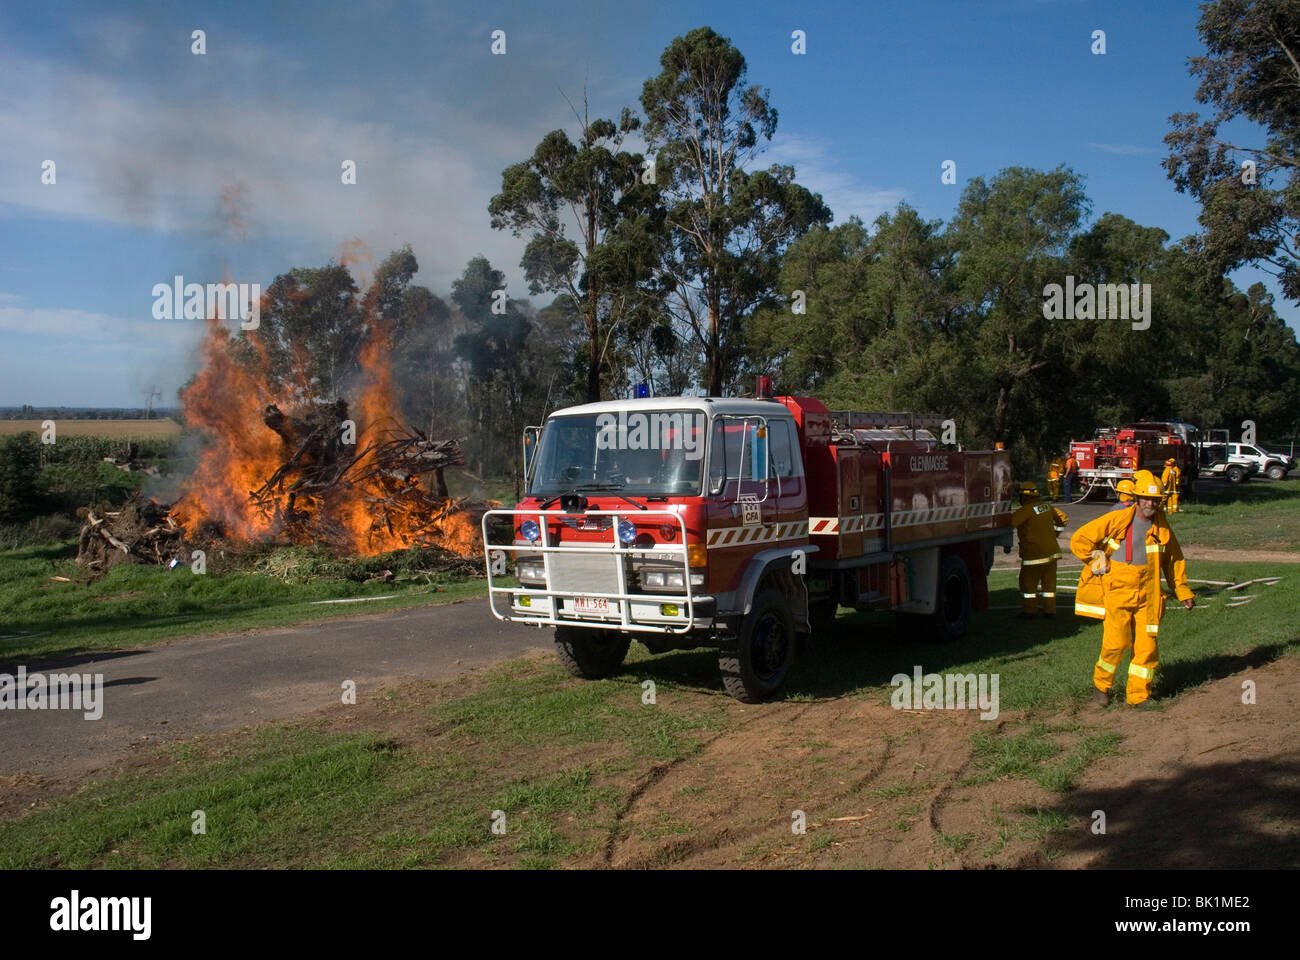 CFA Paese Autorità antincendio combustione controllata off Foto Stock